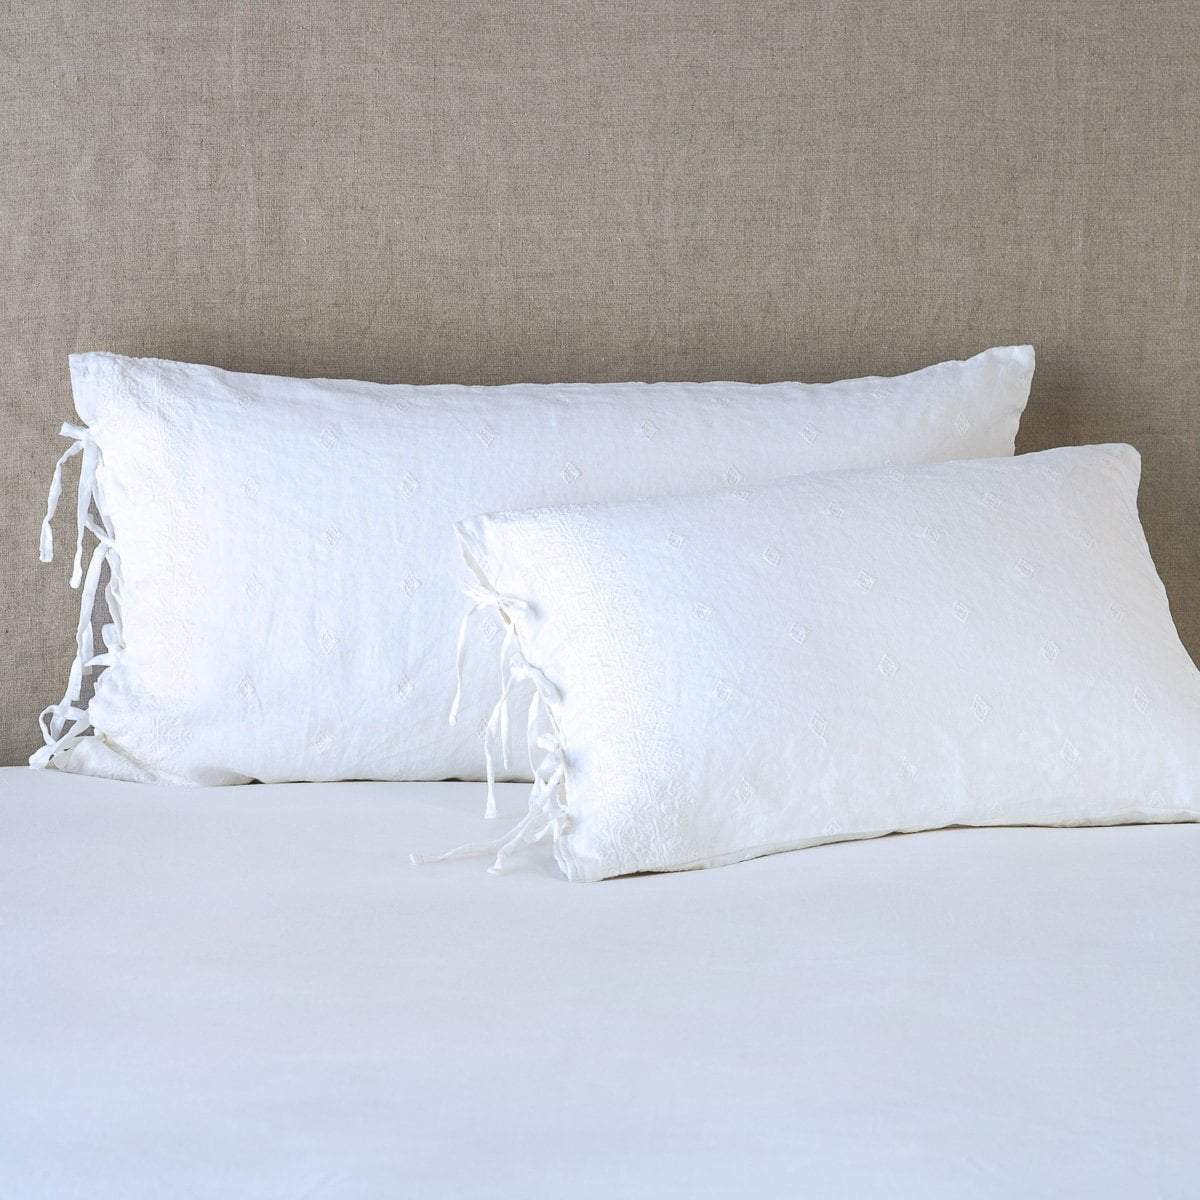 standard pillow size nz